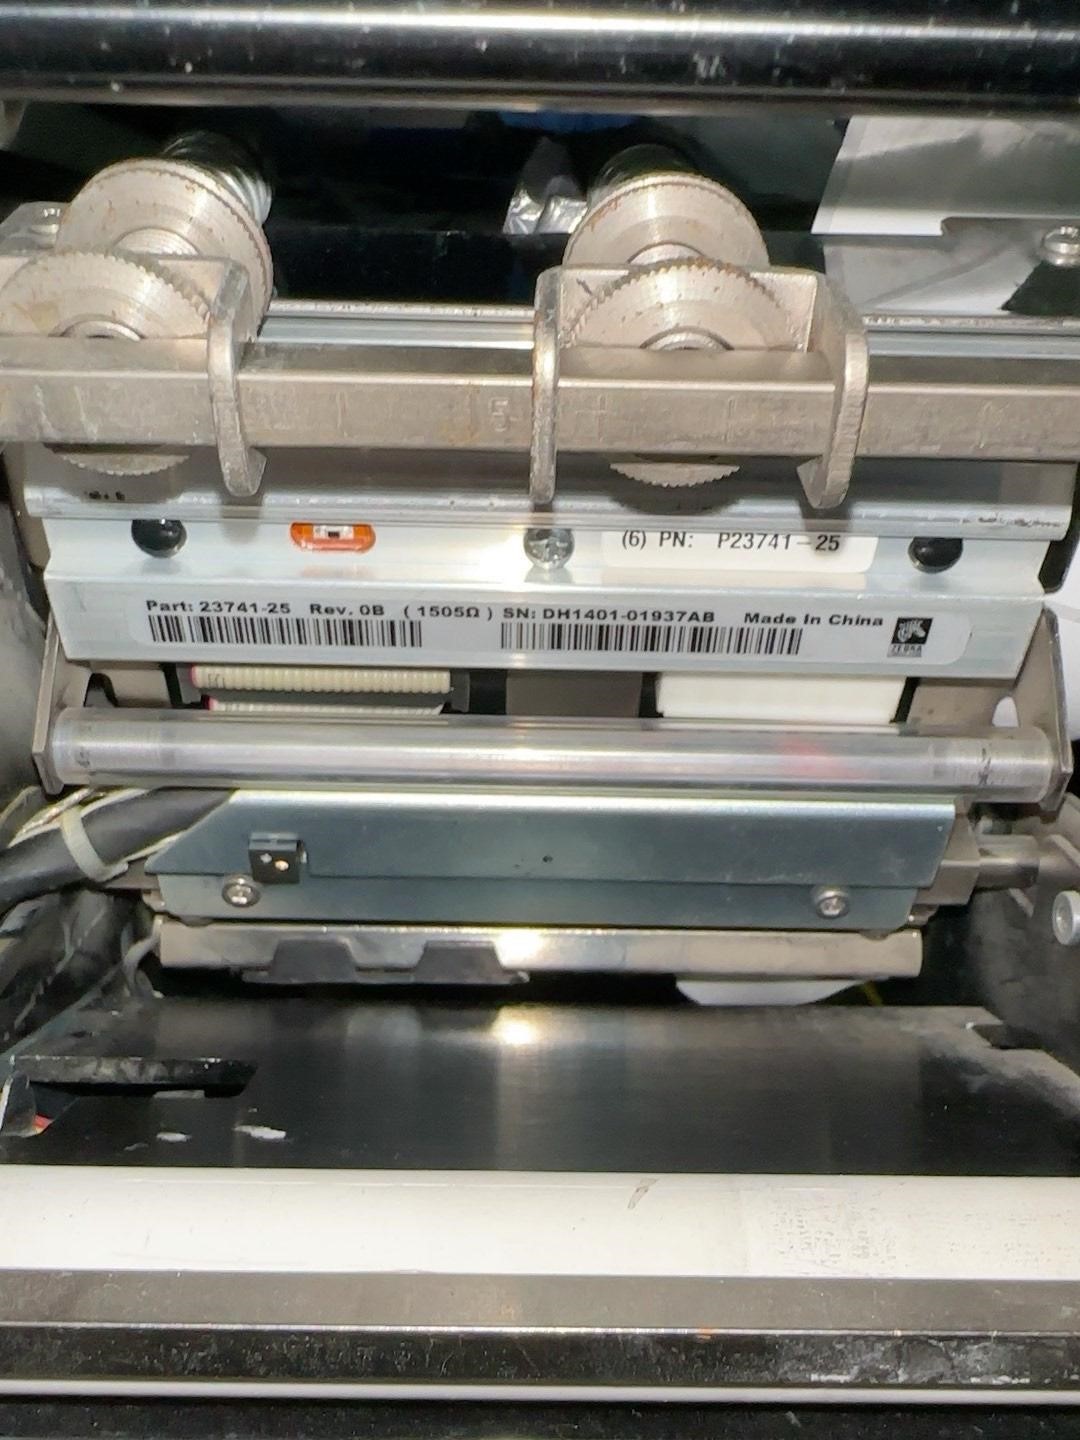 斑马110Xi4 300dpi高清工业型条码打印机-图2